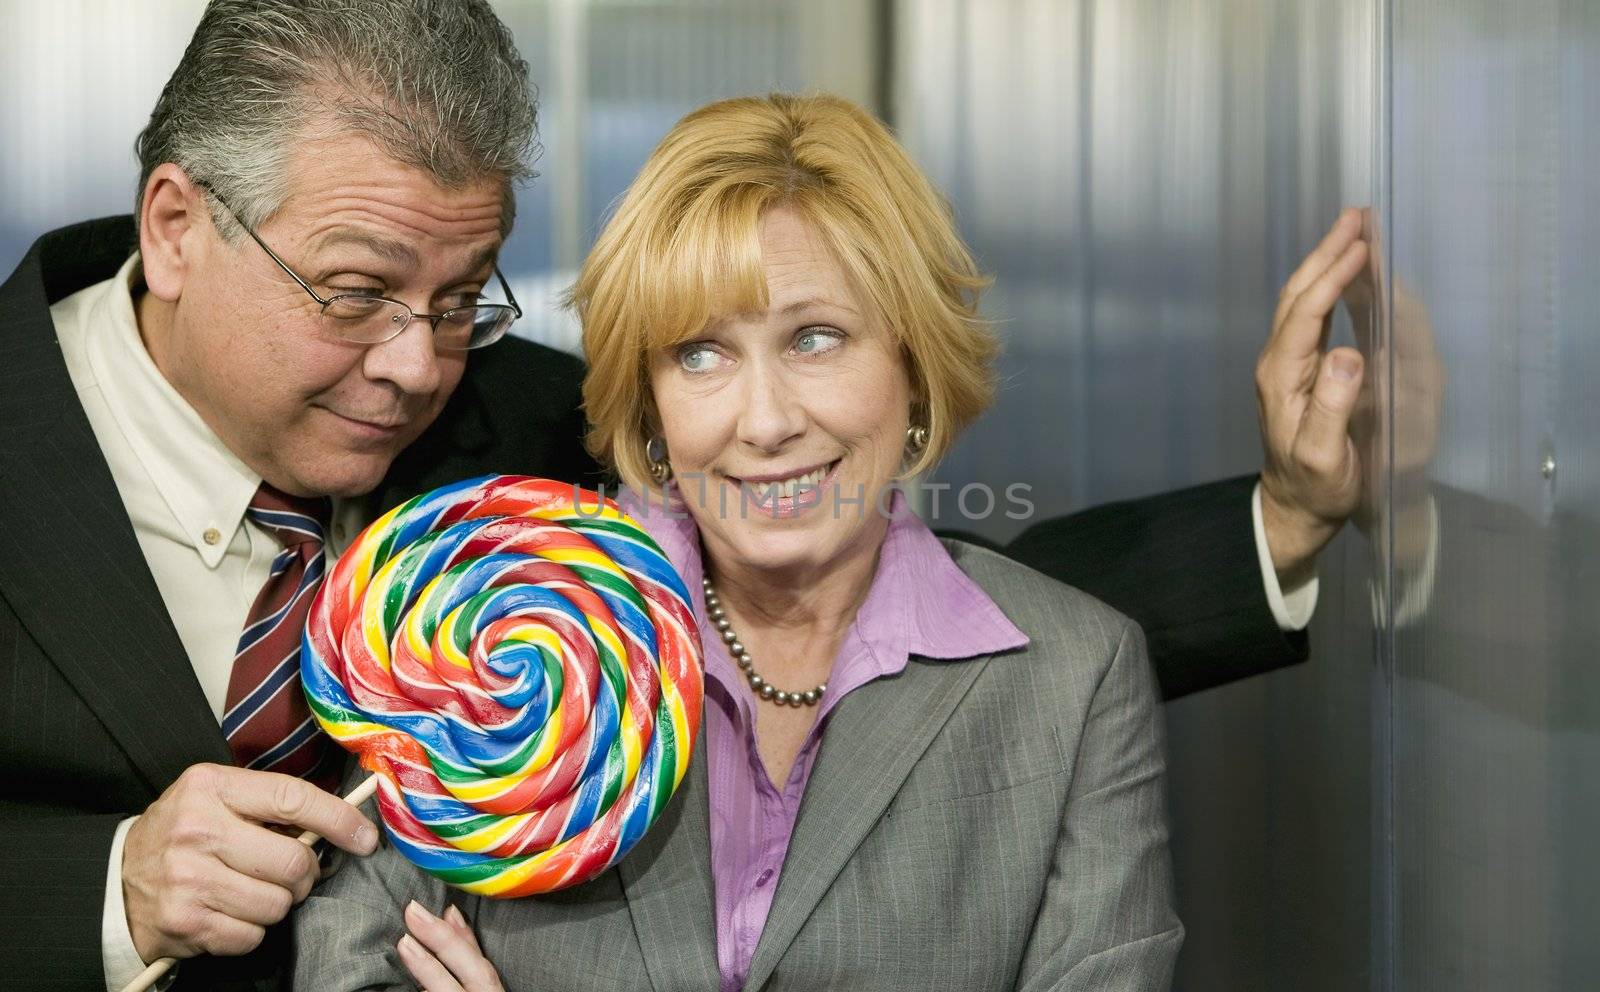 Man in office offers coworker a lollipop by Creatista